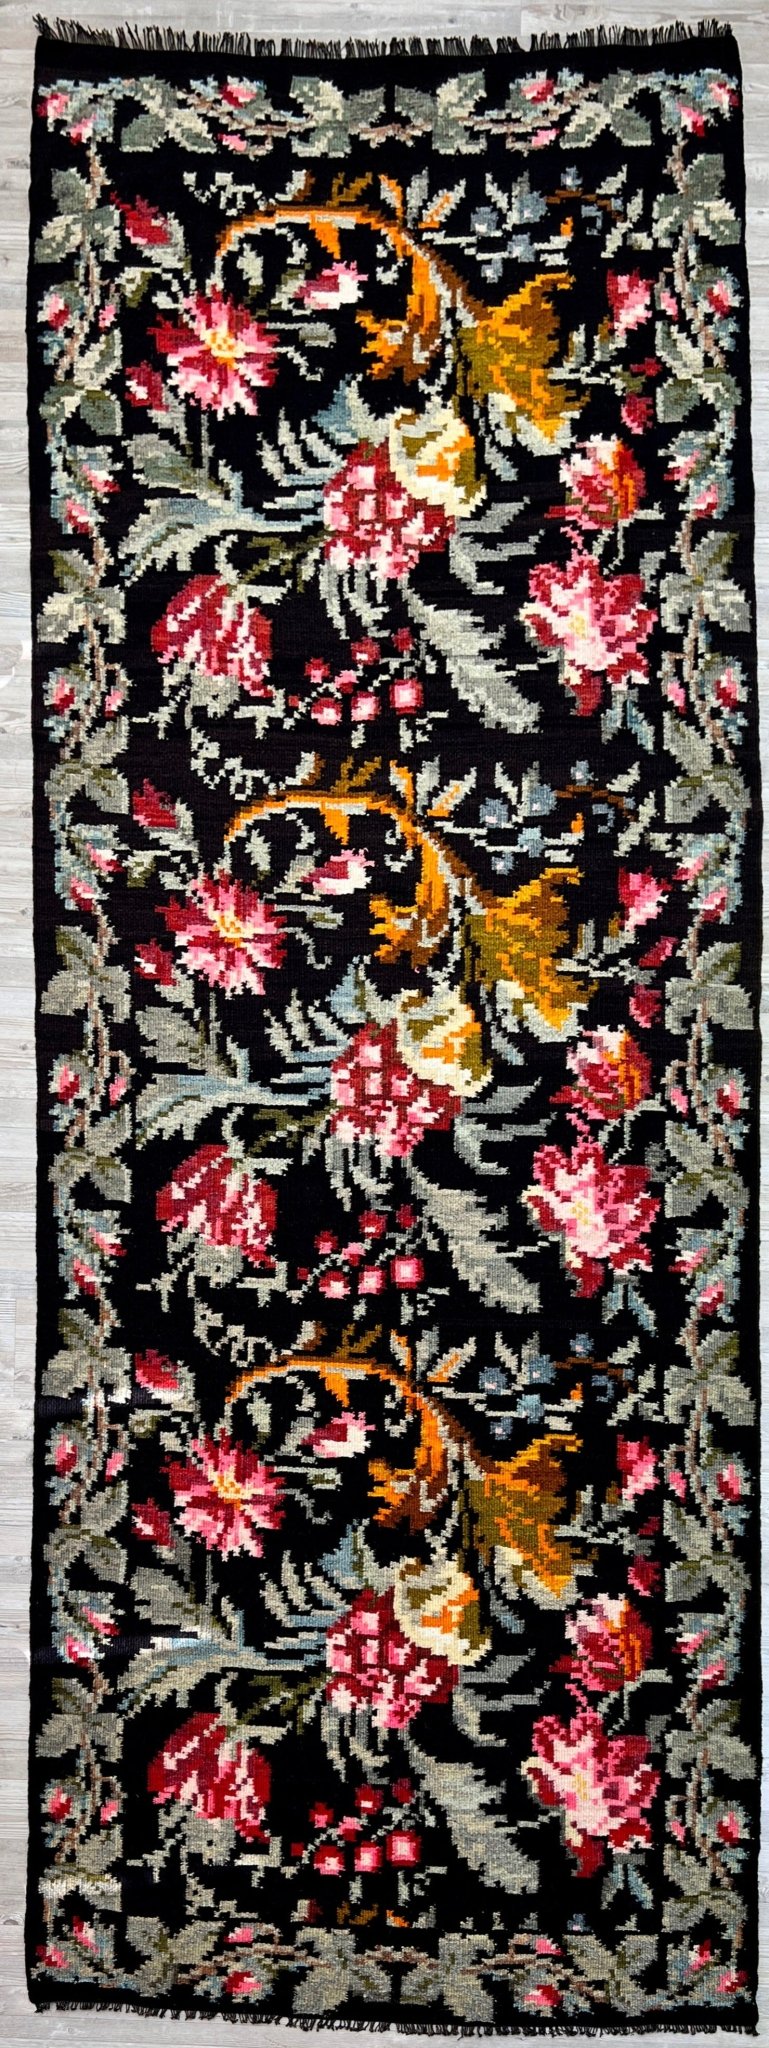 Moldovan rose runner kilim rug shop berkeley, palo alto. Buy kilim rug online free shipping. Oriental rug shop los altos.